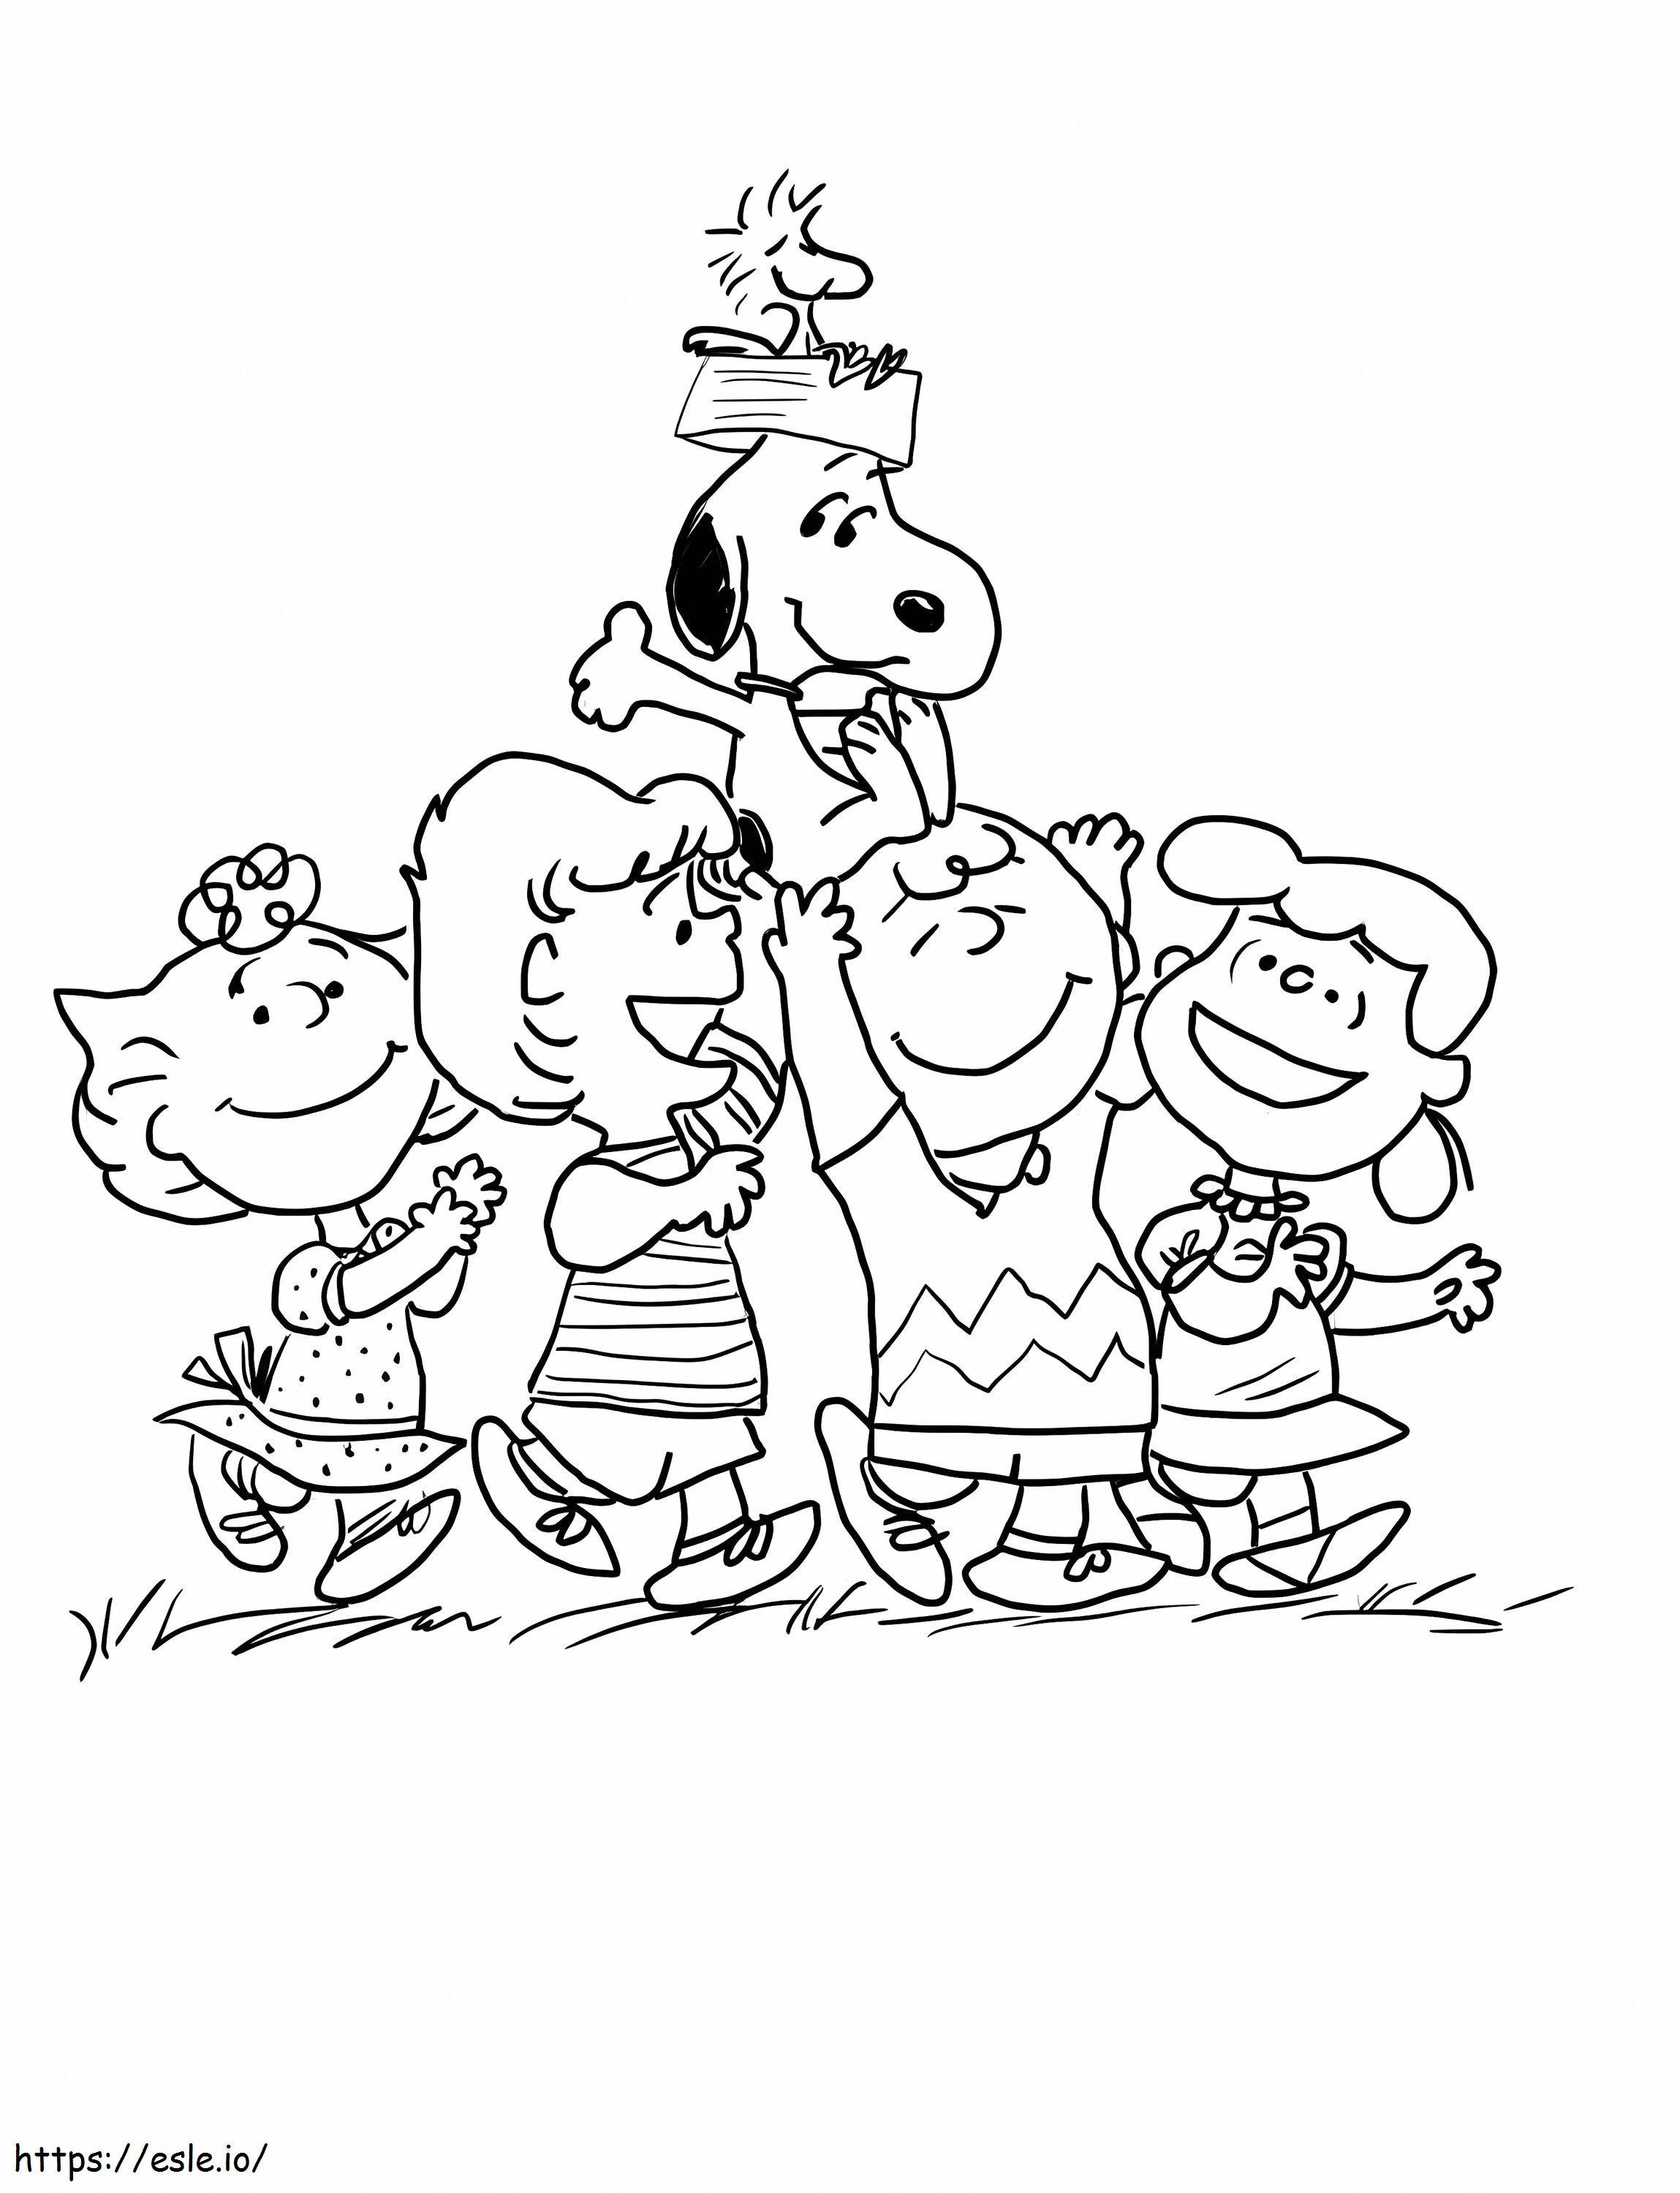 Funny Peanuts Gang coloring page